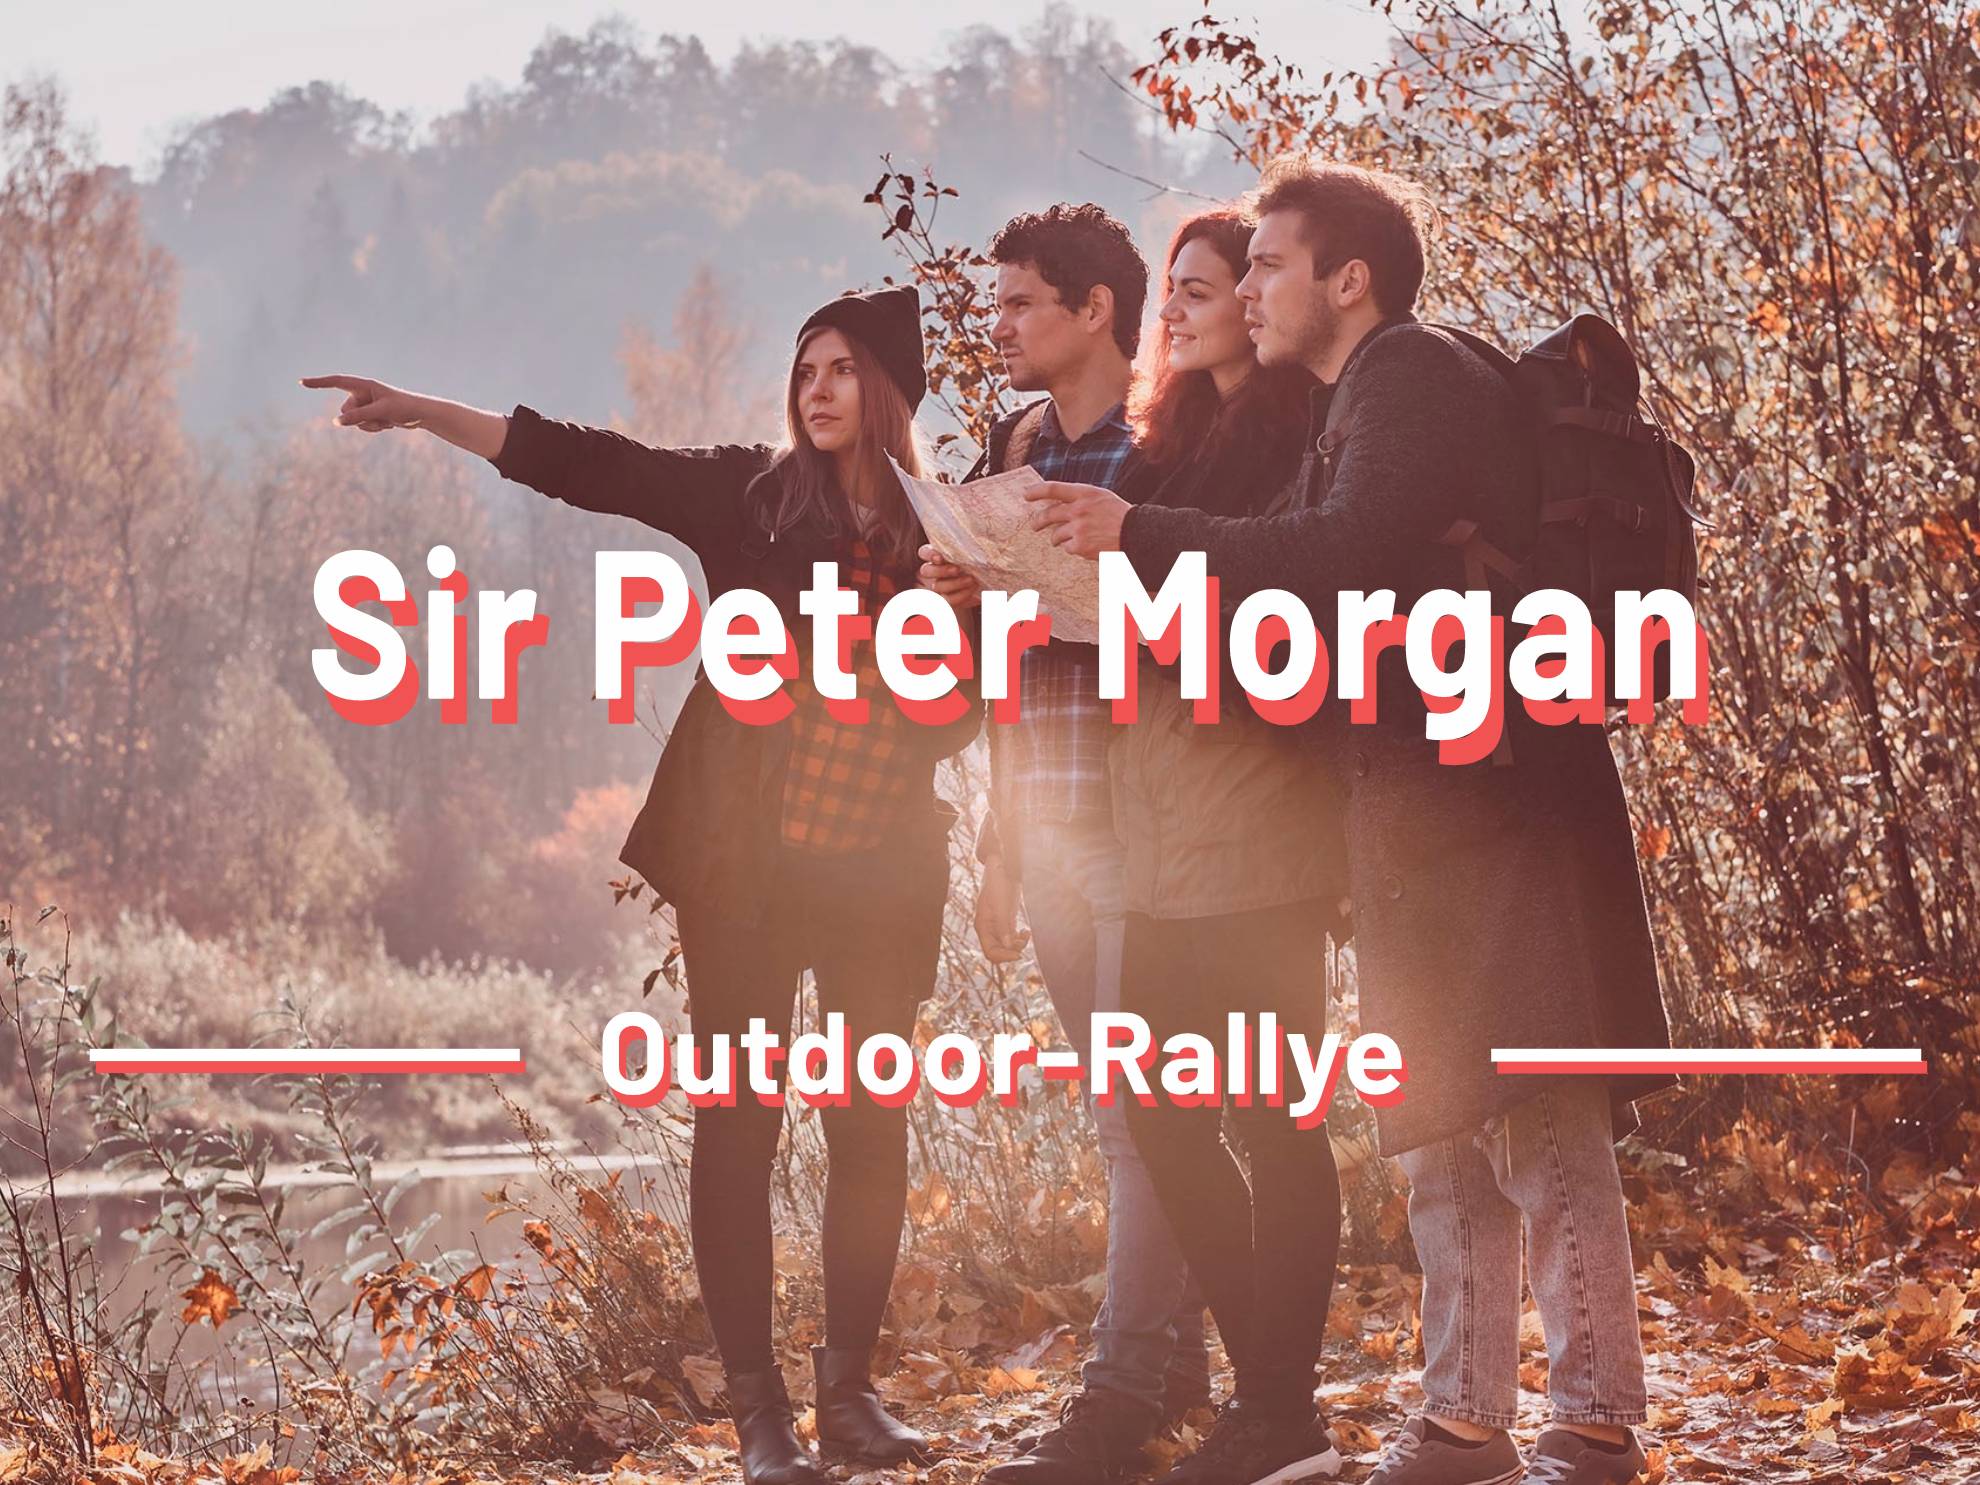 Sir-peter-morgan-Outdoor-Rallye-gruppe-outdoor-dalang